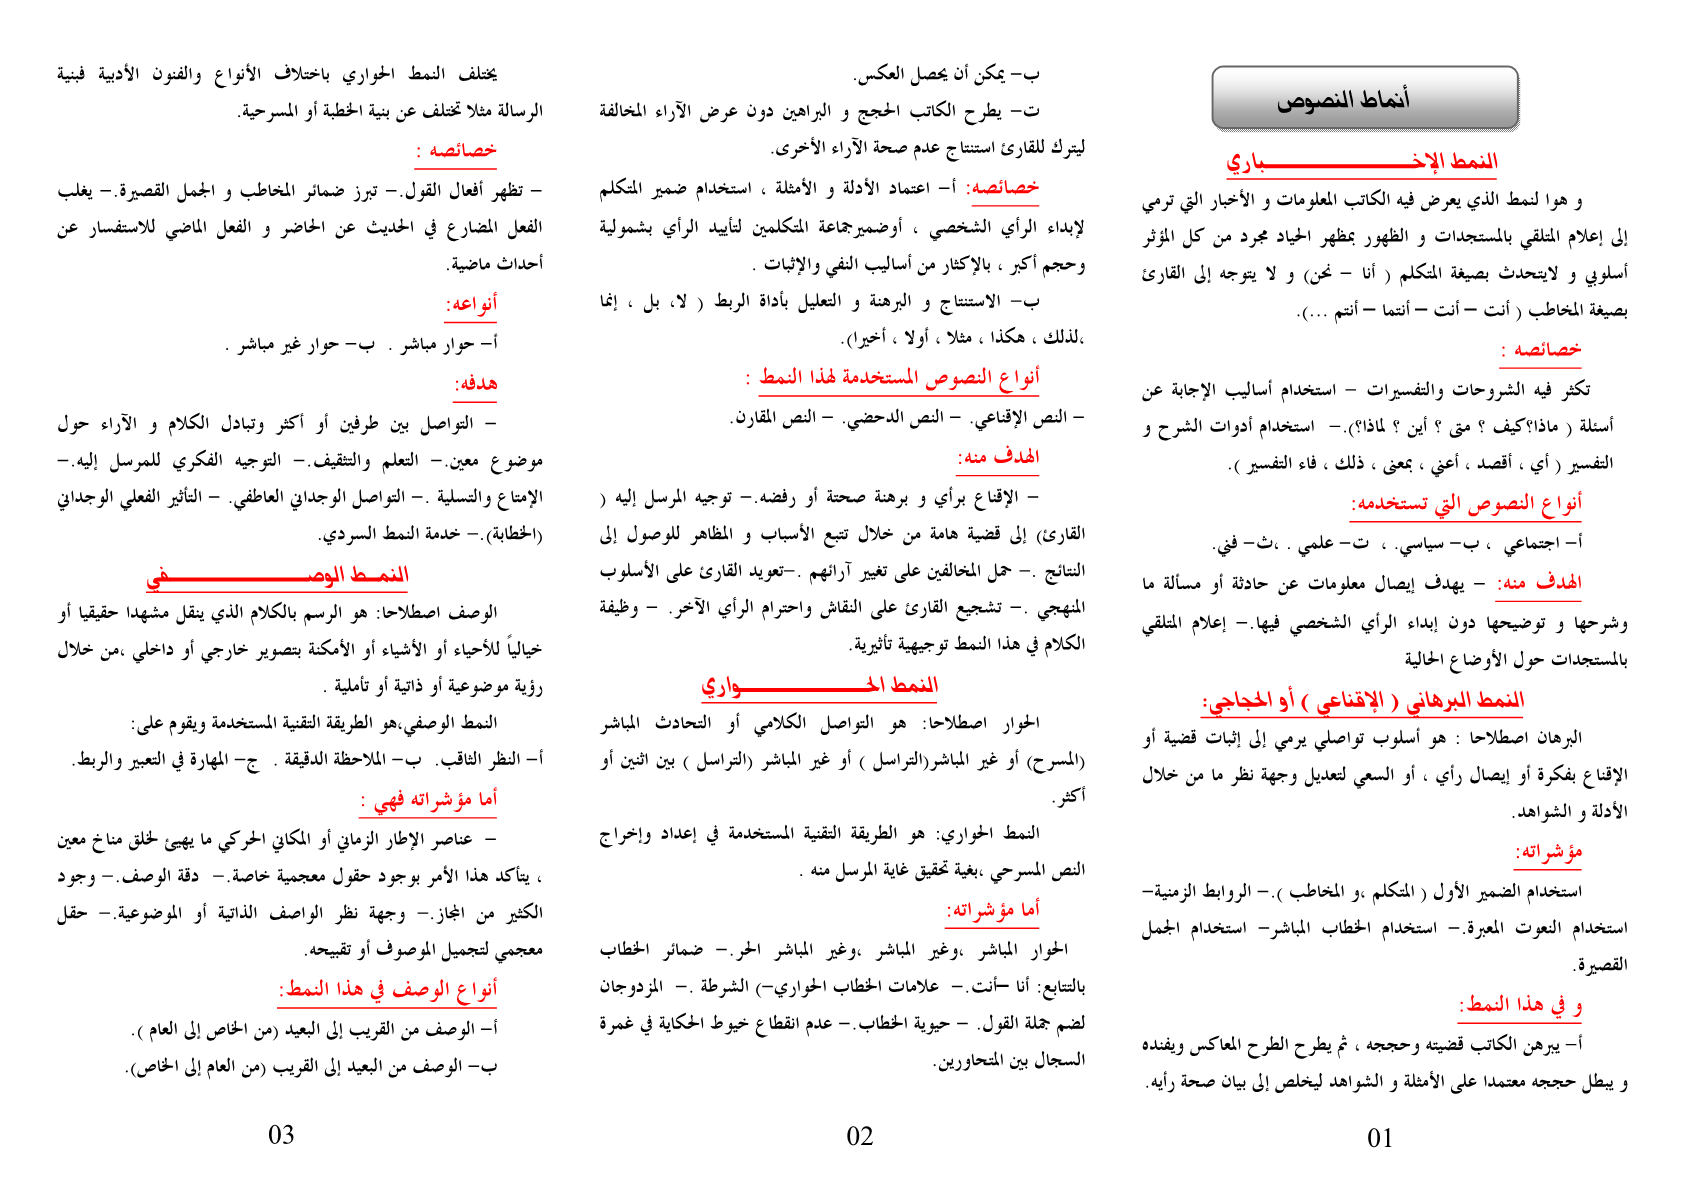 درس أنماط النصوص العربية جدع مشترك اداب وعلوم انسانية